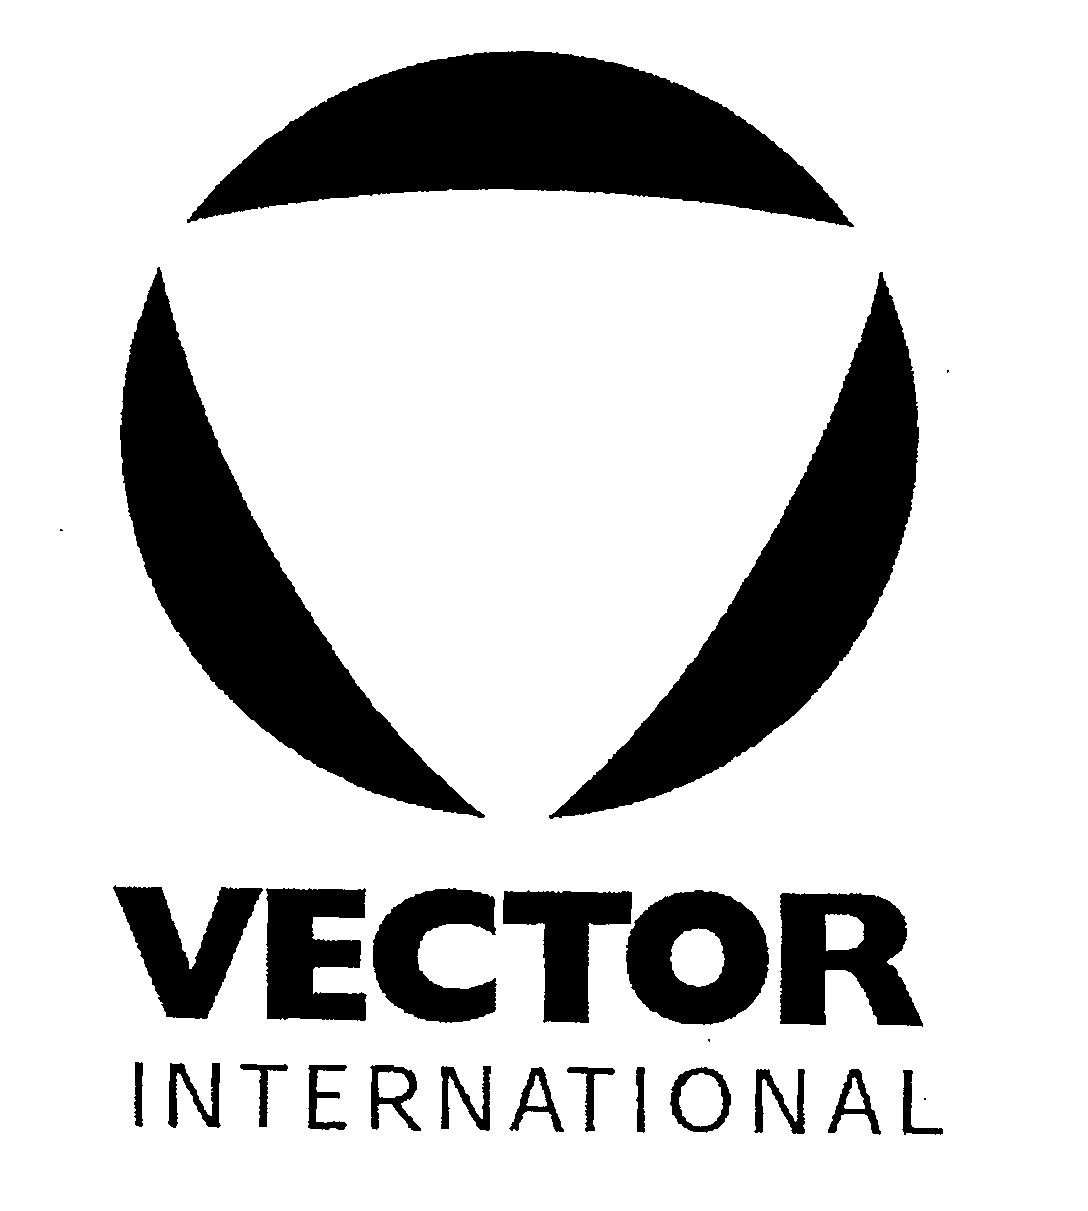  VECTOR INTERNATIONAL